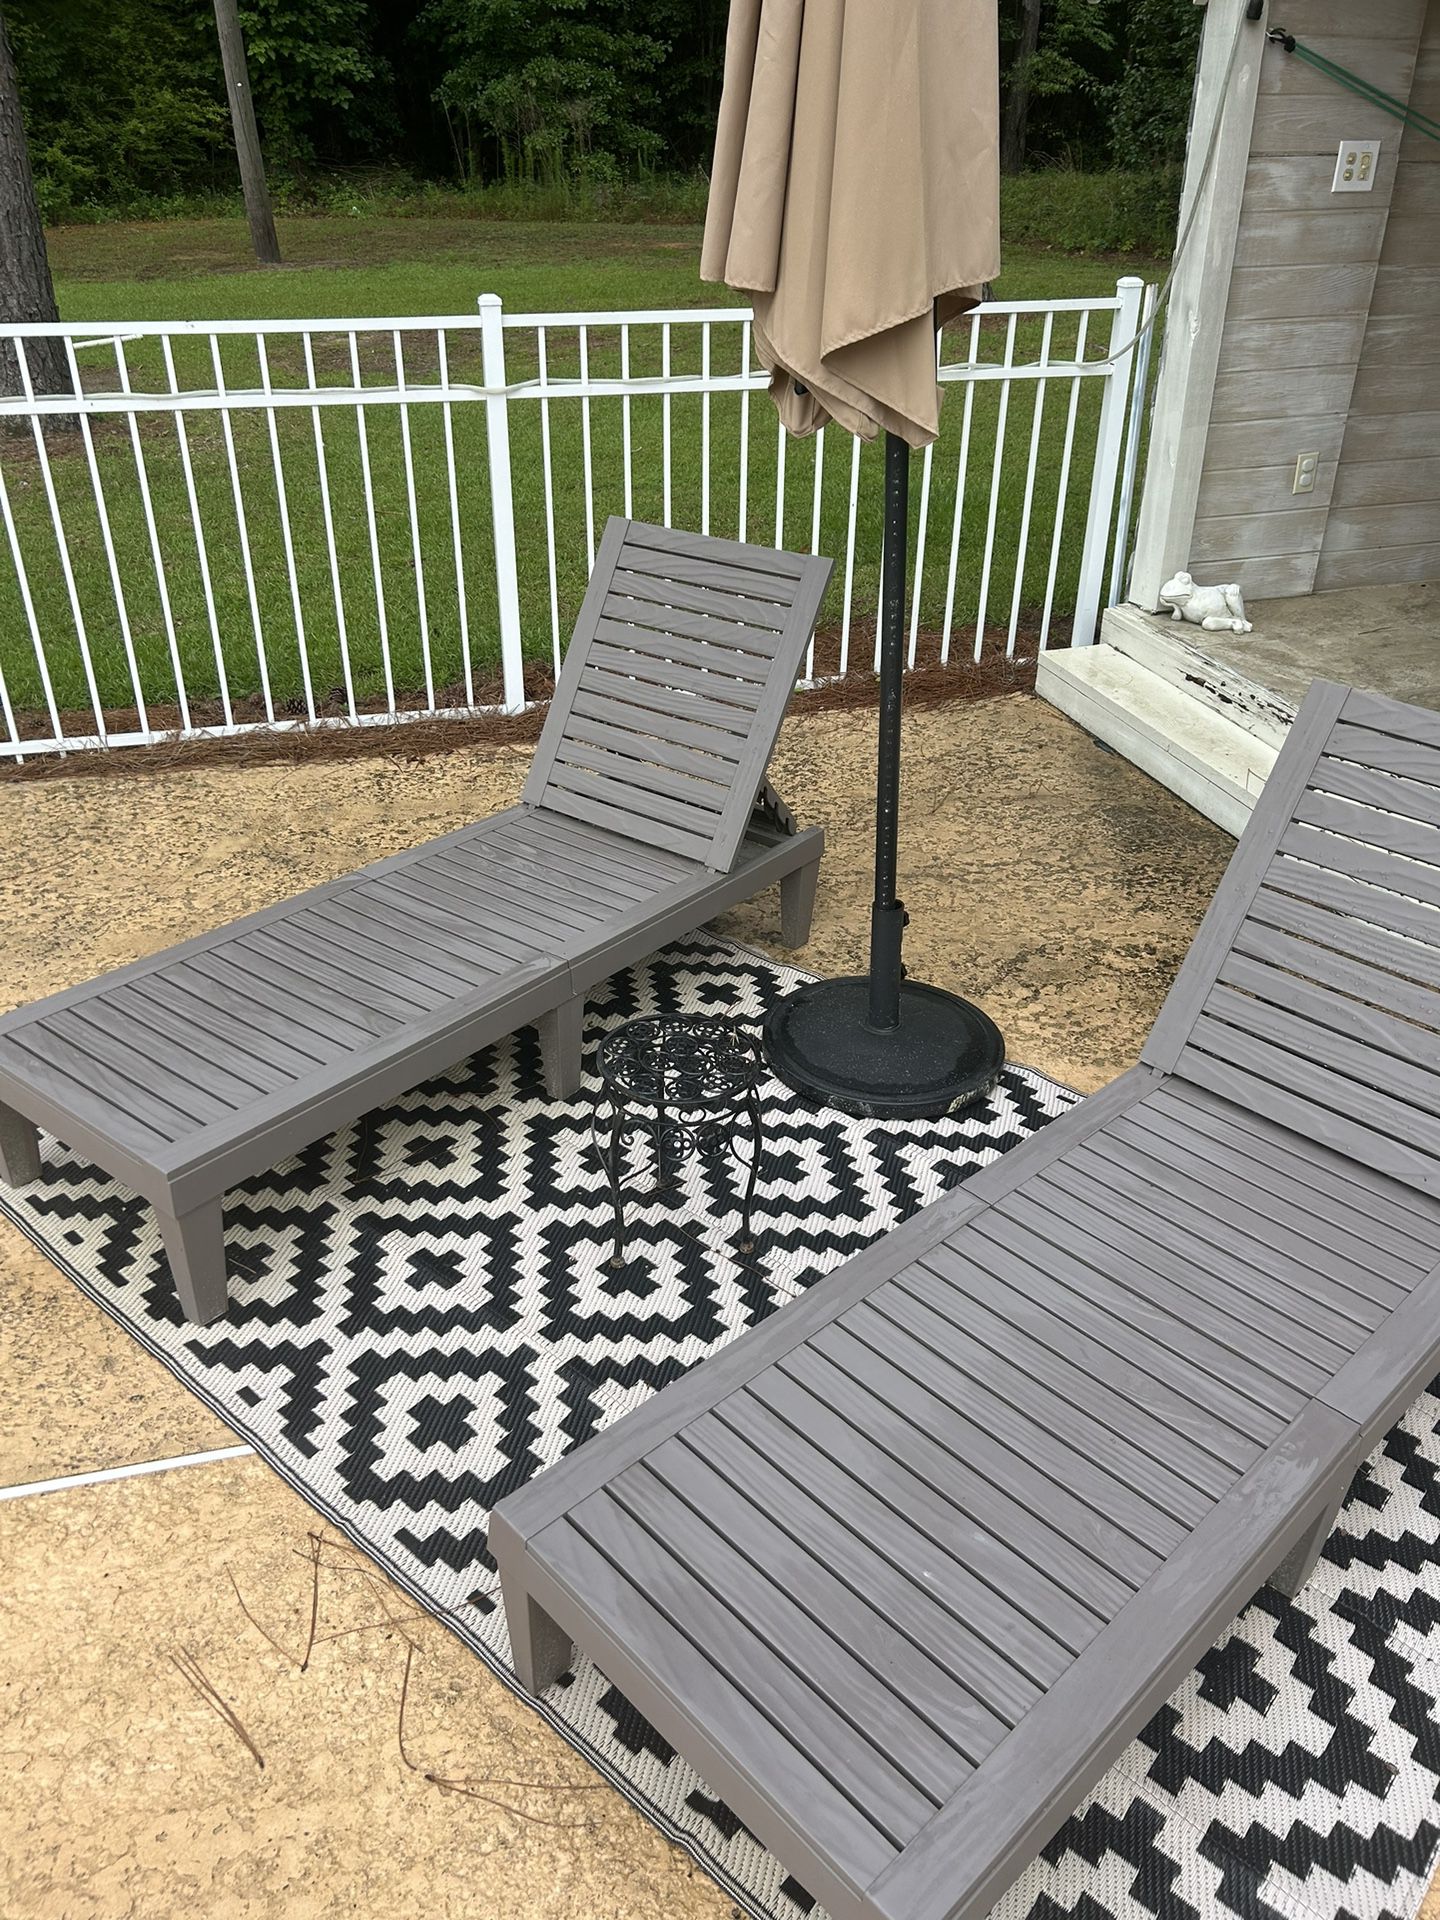 Recliner Sun Deck Chairs